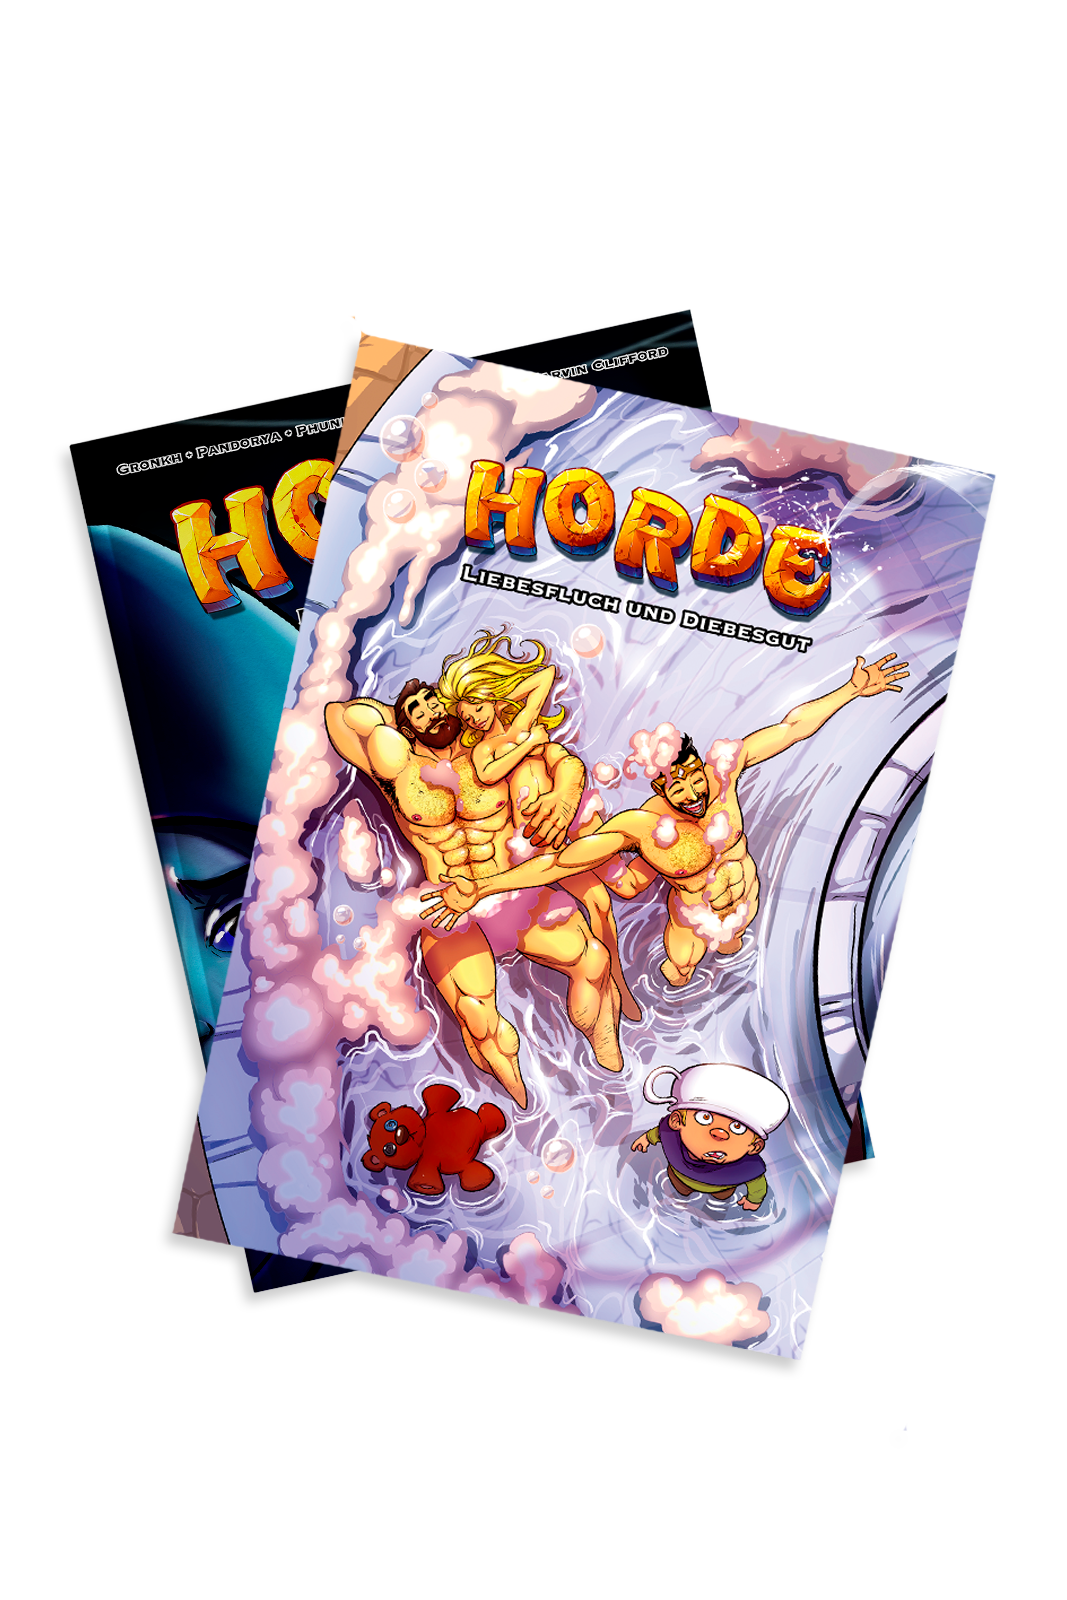 HORDE Band 3 - Comic Collectors Edition mit Schuber - Liebesfluch und Diebesgut